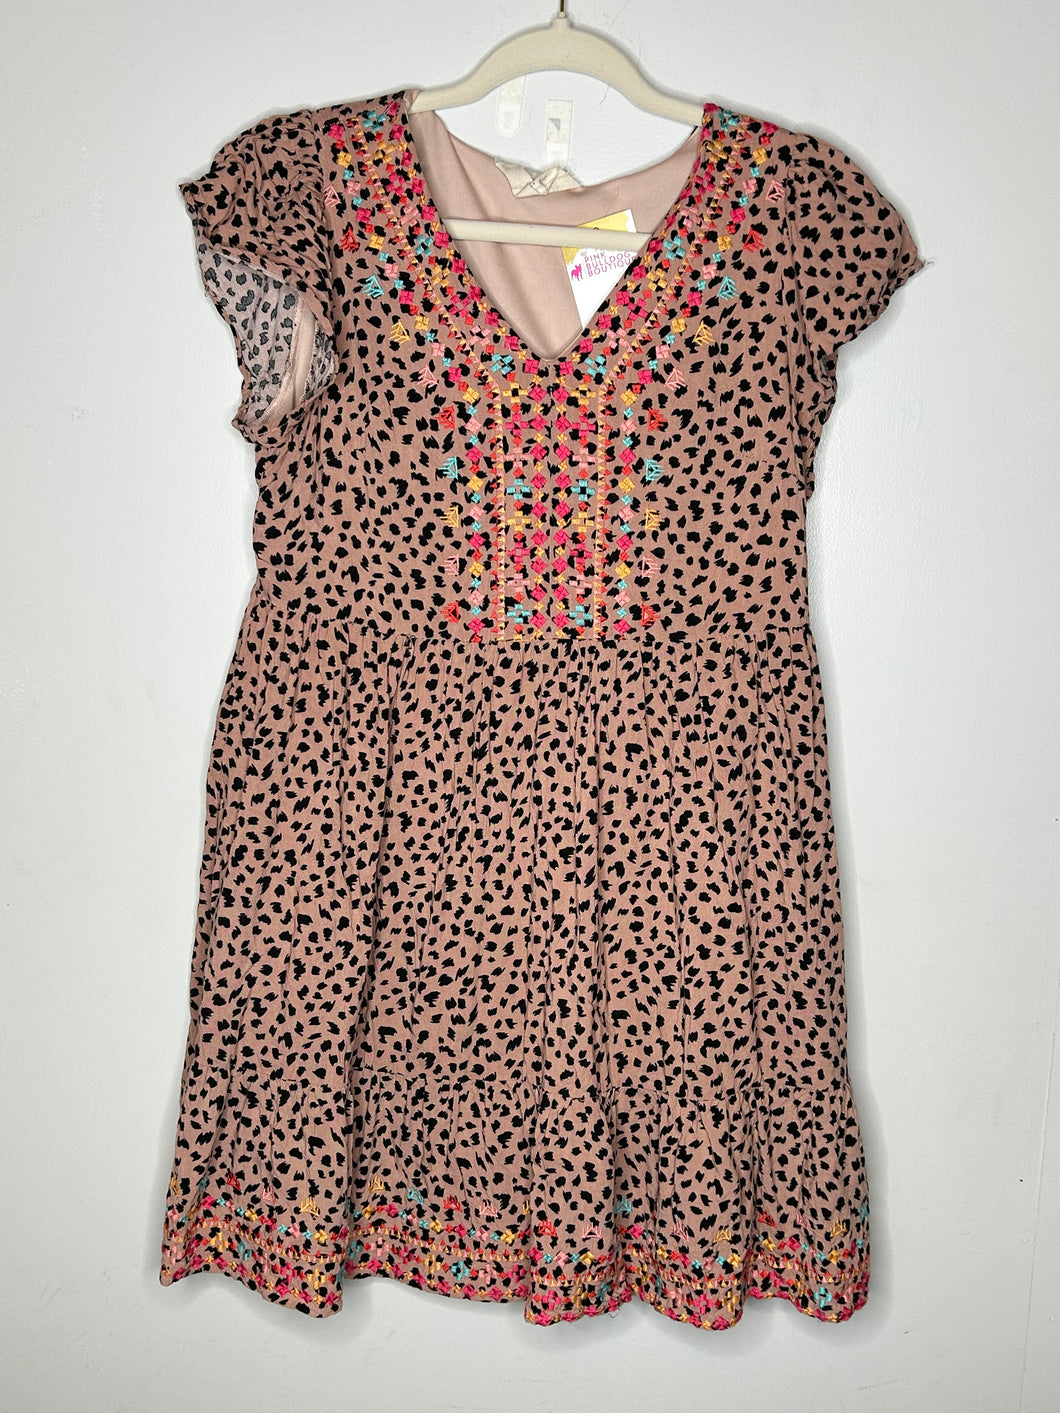 Leopard Savanna Jane Womens Dress, Small